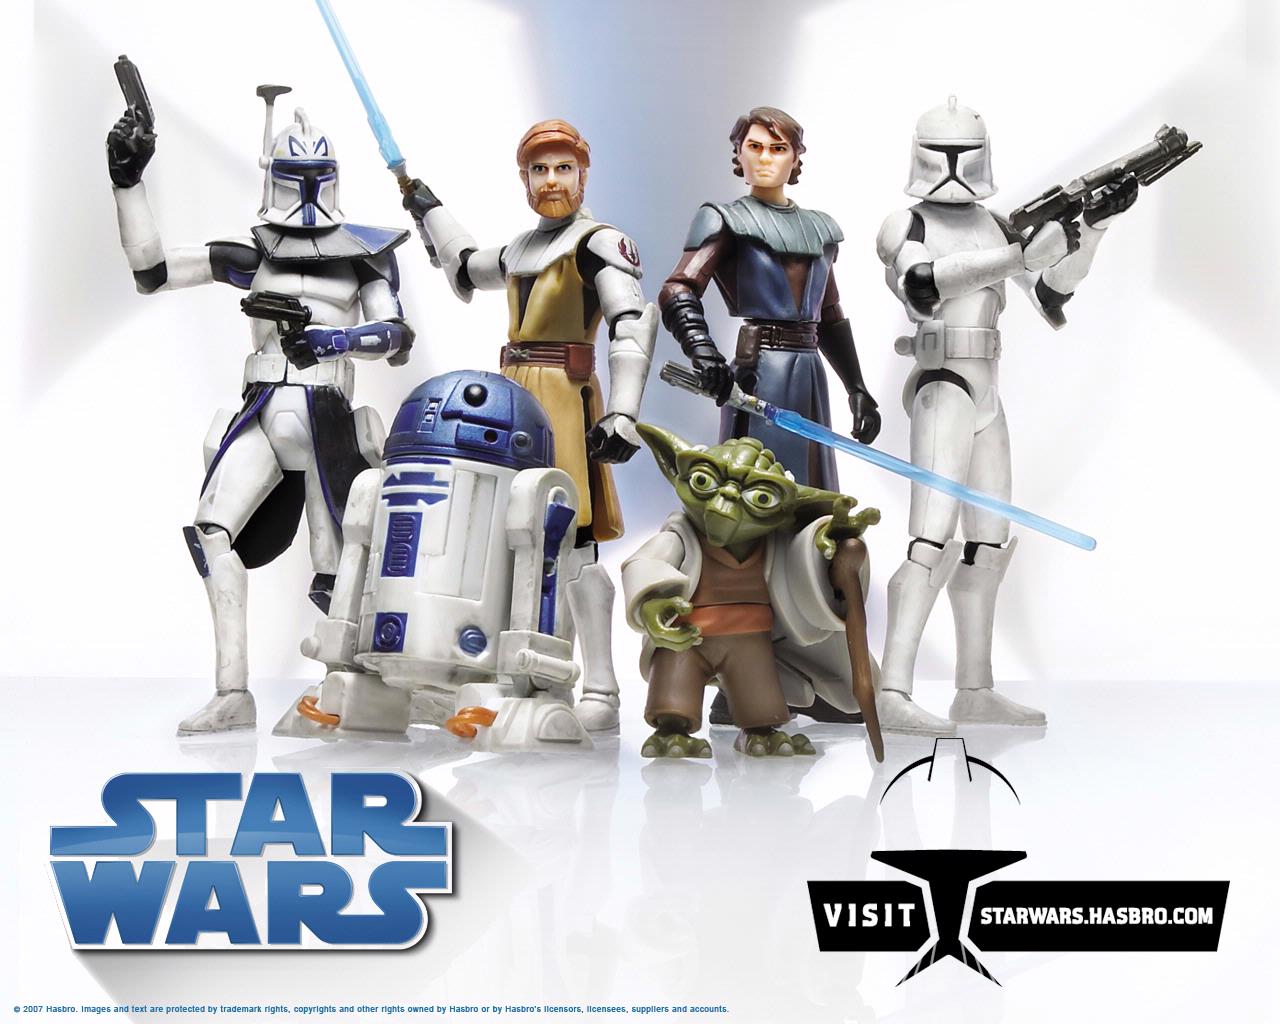 Star Wars Clone Wars Wallpaper|Star Wars|Hasbro